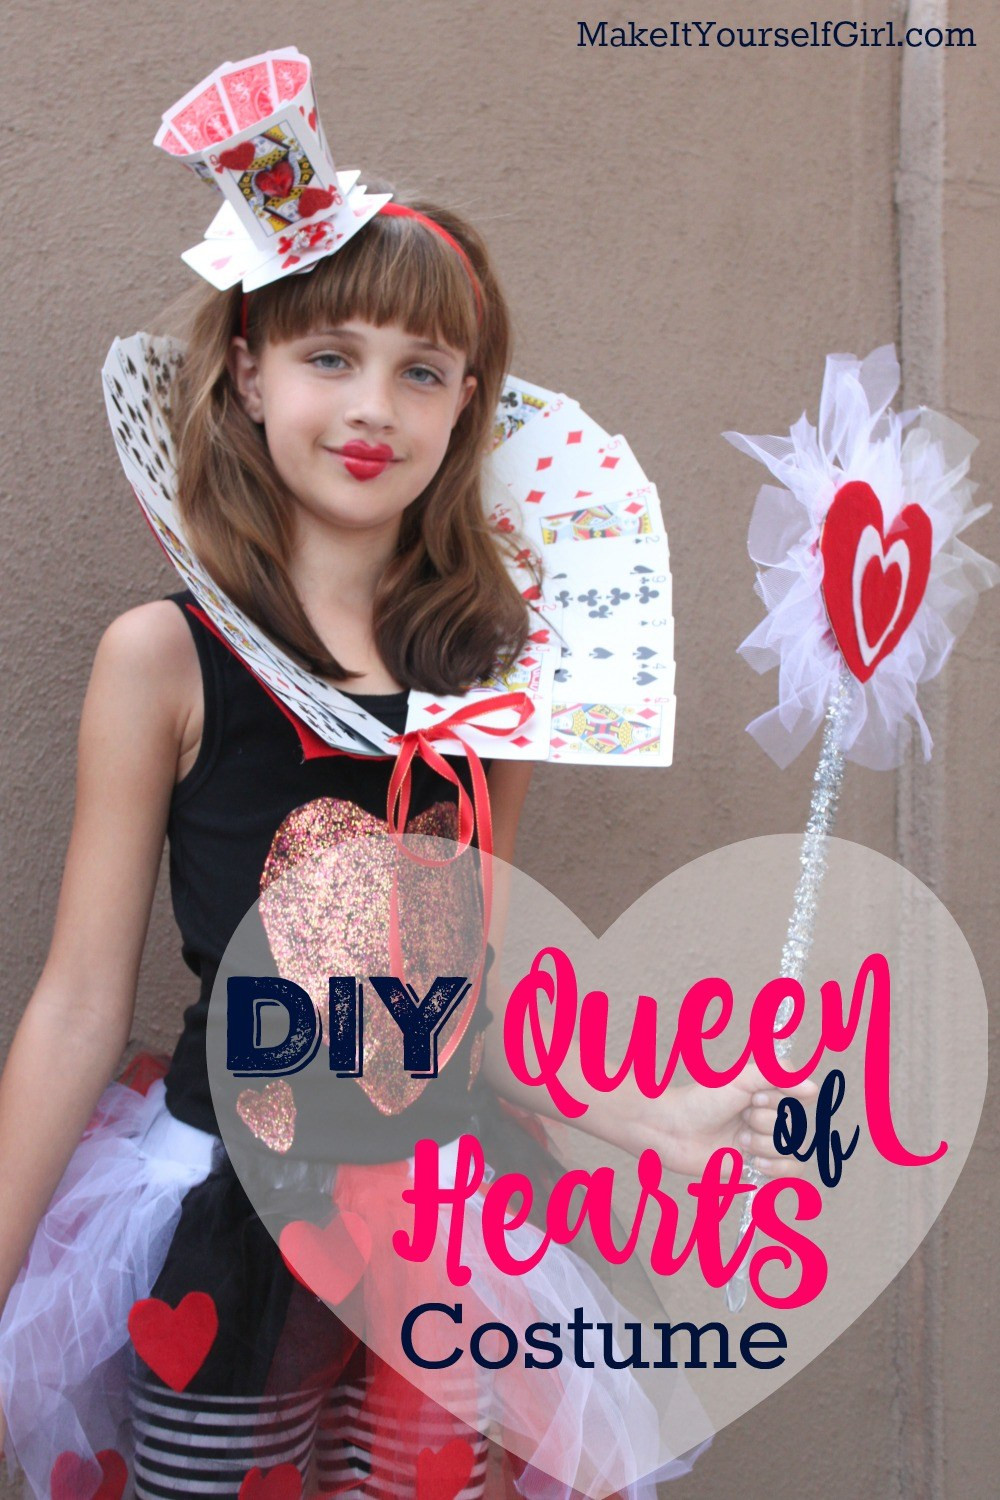 Queen Of Hearts DIY Costume
 DIY Queen of Hearts Costume Tutorial Make It Yourself Girl